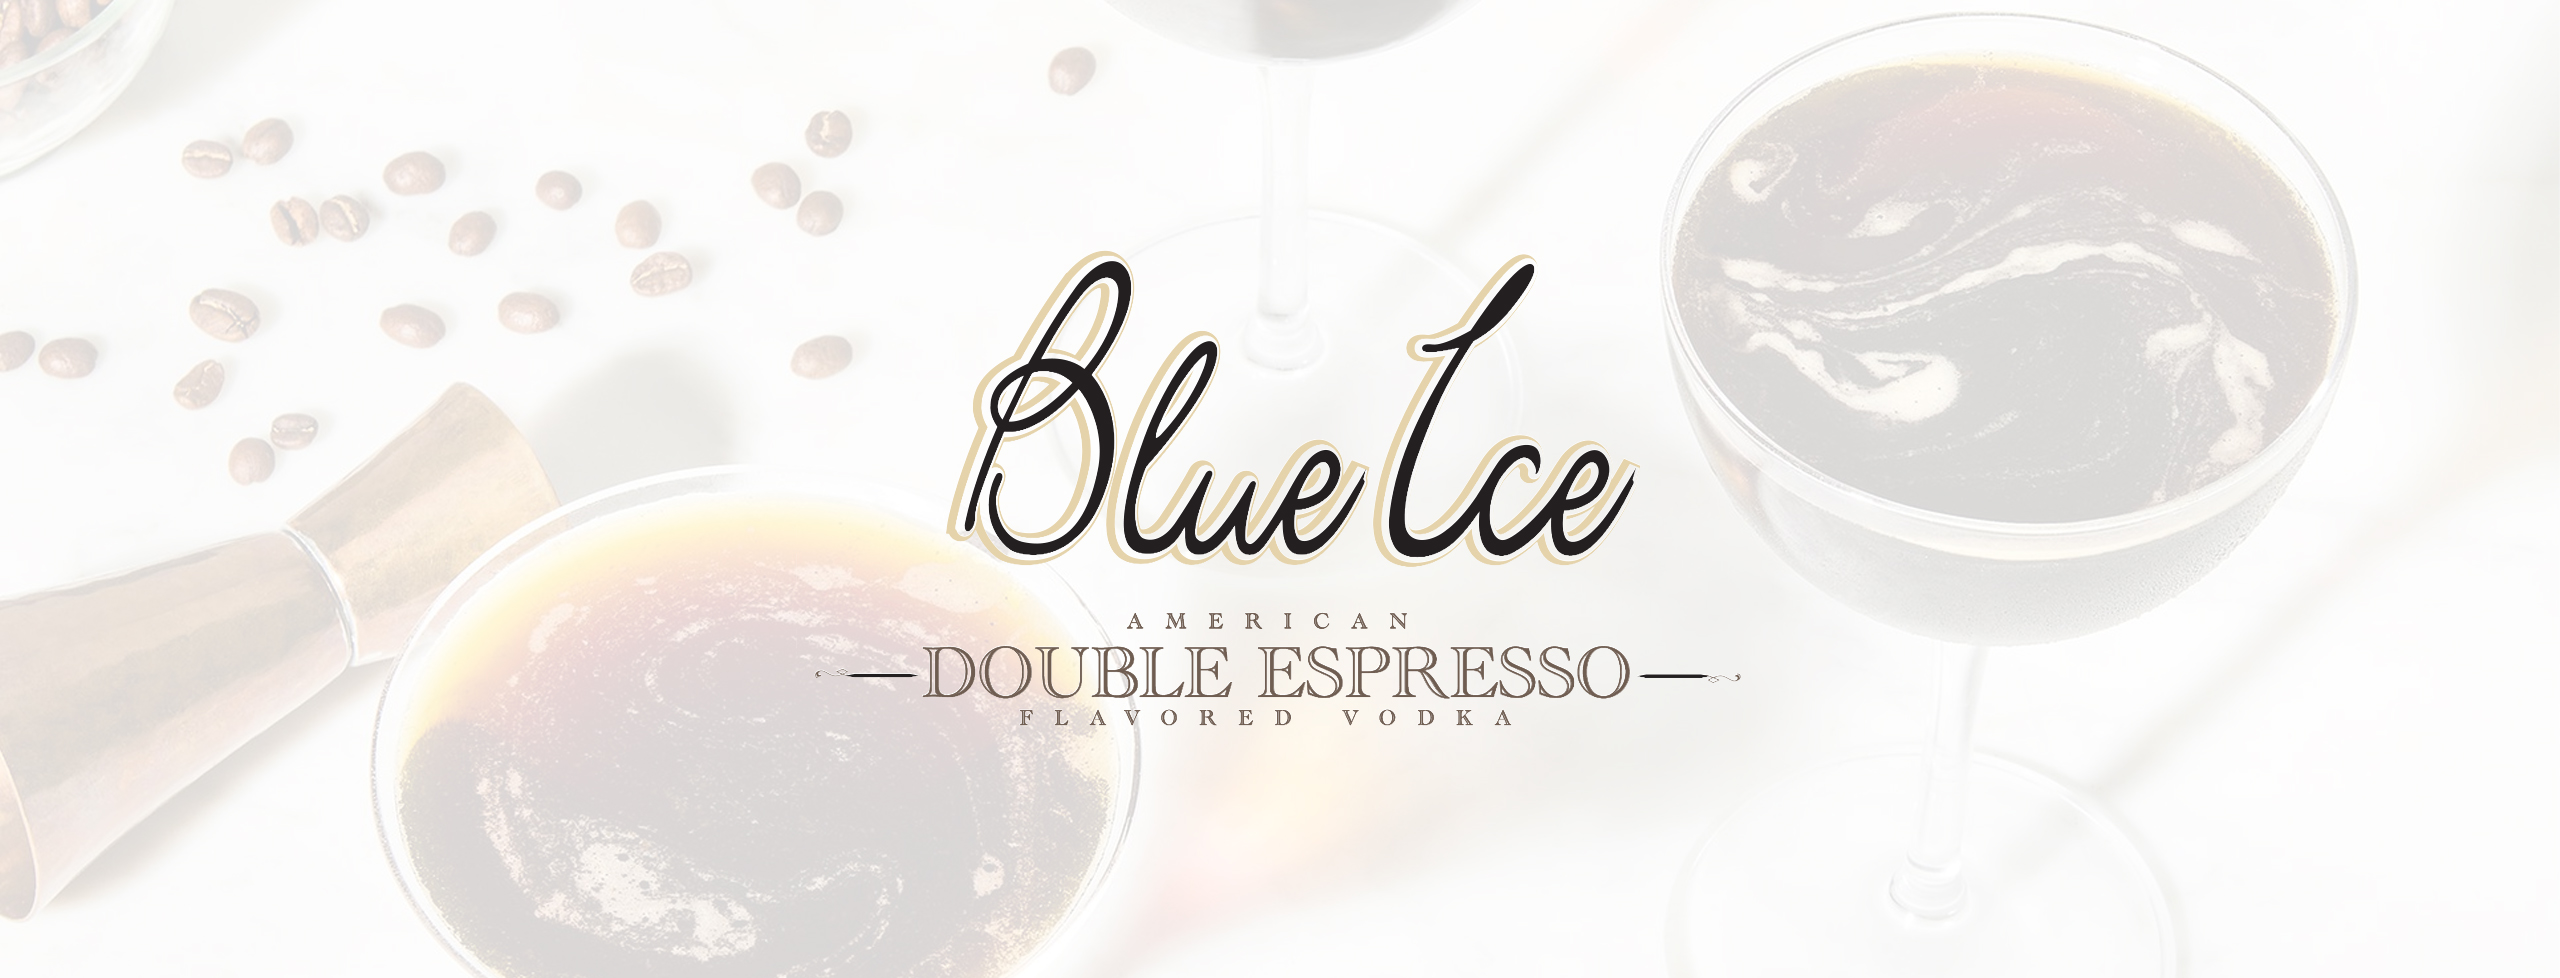 BLUE ICE VODKA - DOUBLE ESPRESSO